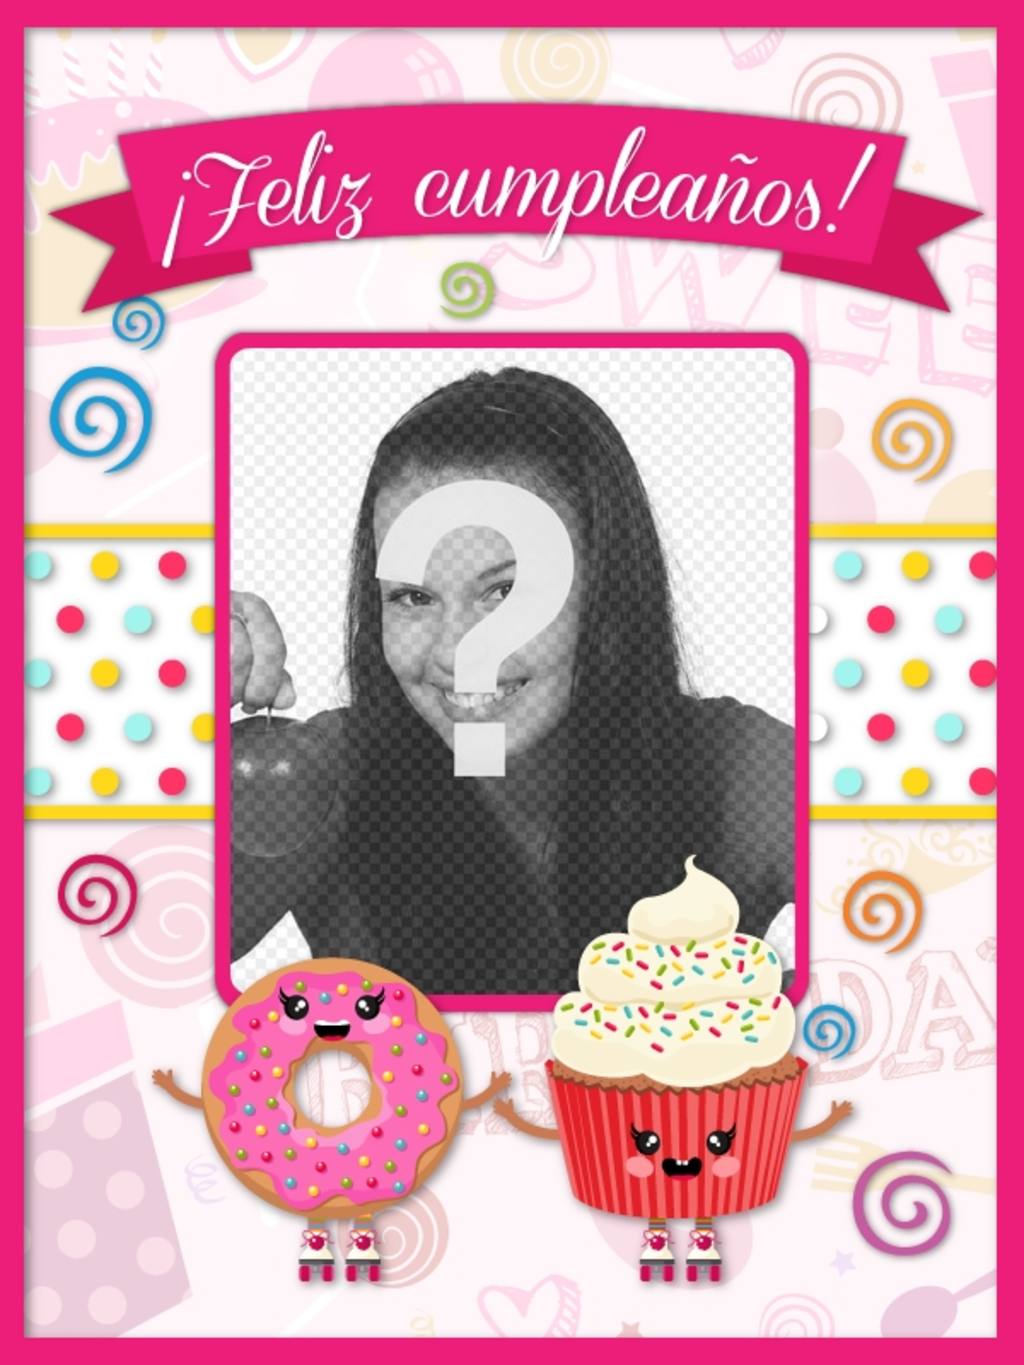 Tarjeta de cumpleaños rosa con un donuts y un pastelito dibujados con un hueco donde poner una..